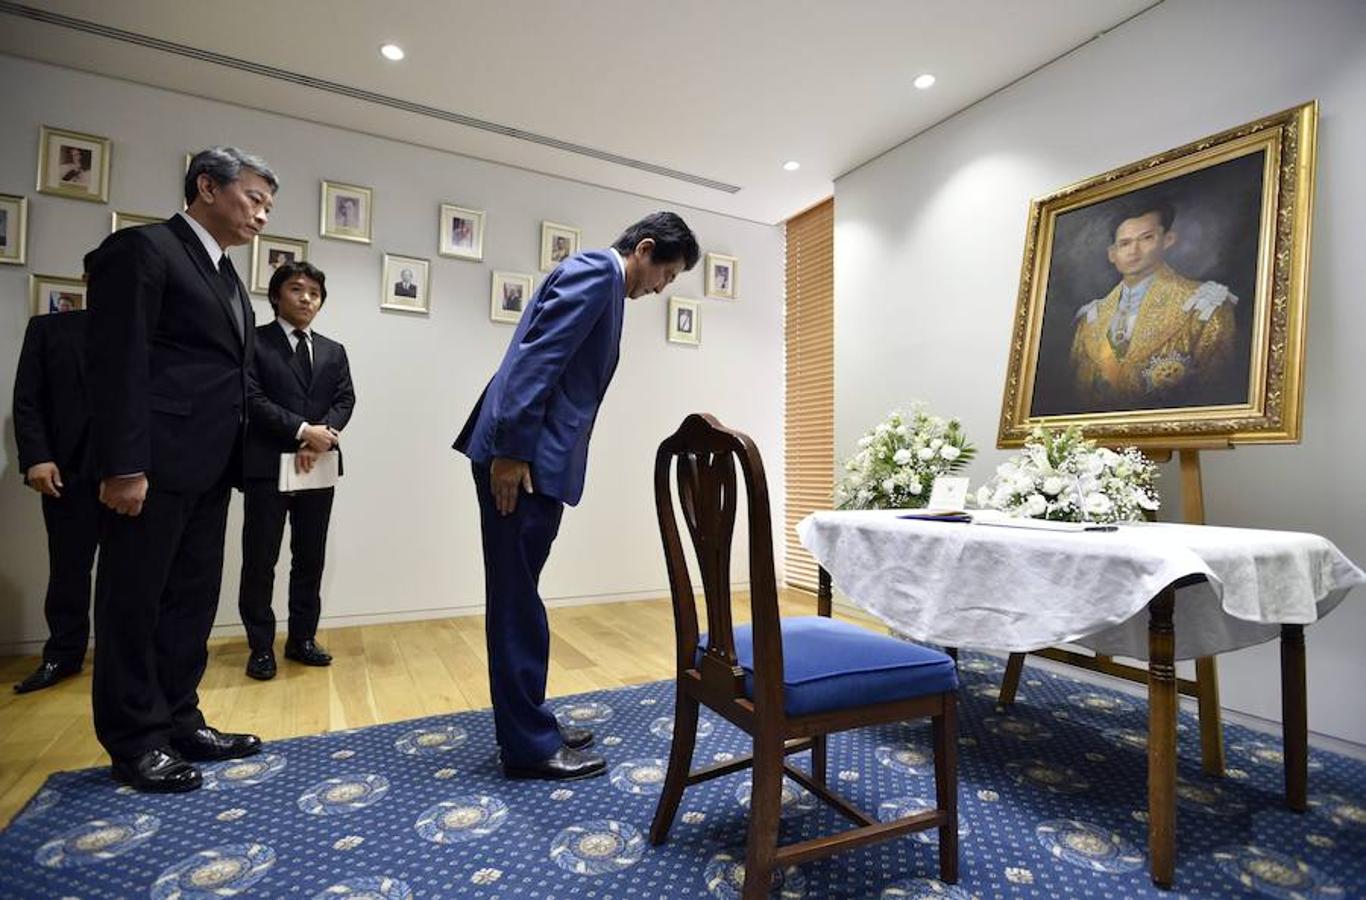 El primer ministro japonés, Shinzo Abe, hace una reverencia ante el retrato del Rey Bhumibol Adulyadej de Tailandia tras firmar en el libro de condolencias instalado en la Embajada de Tailandia en Tokio